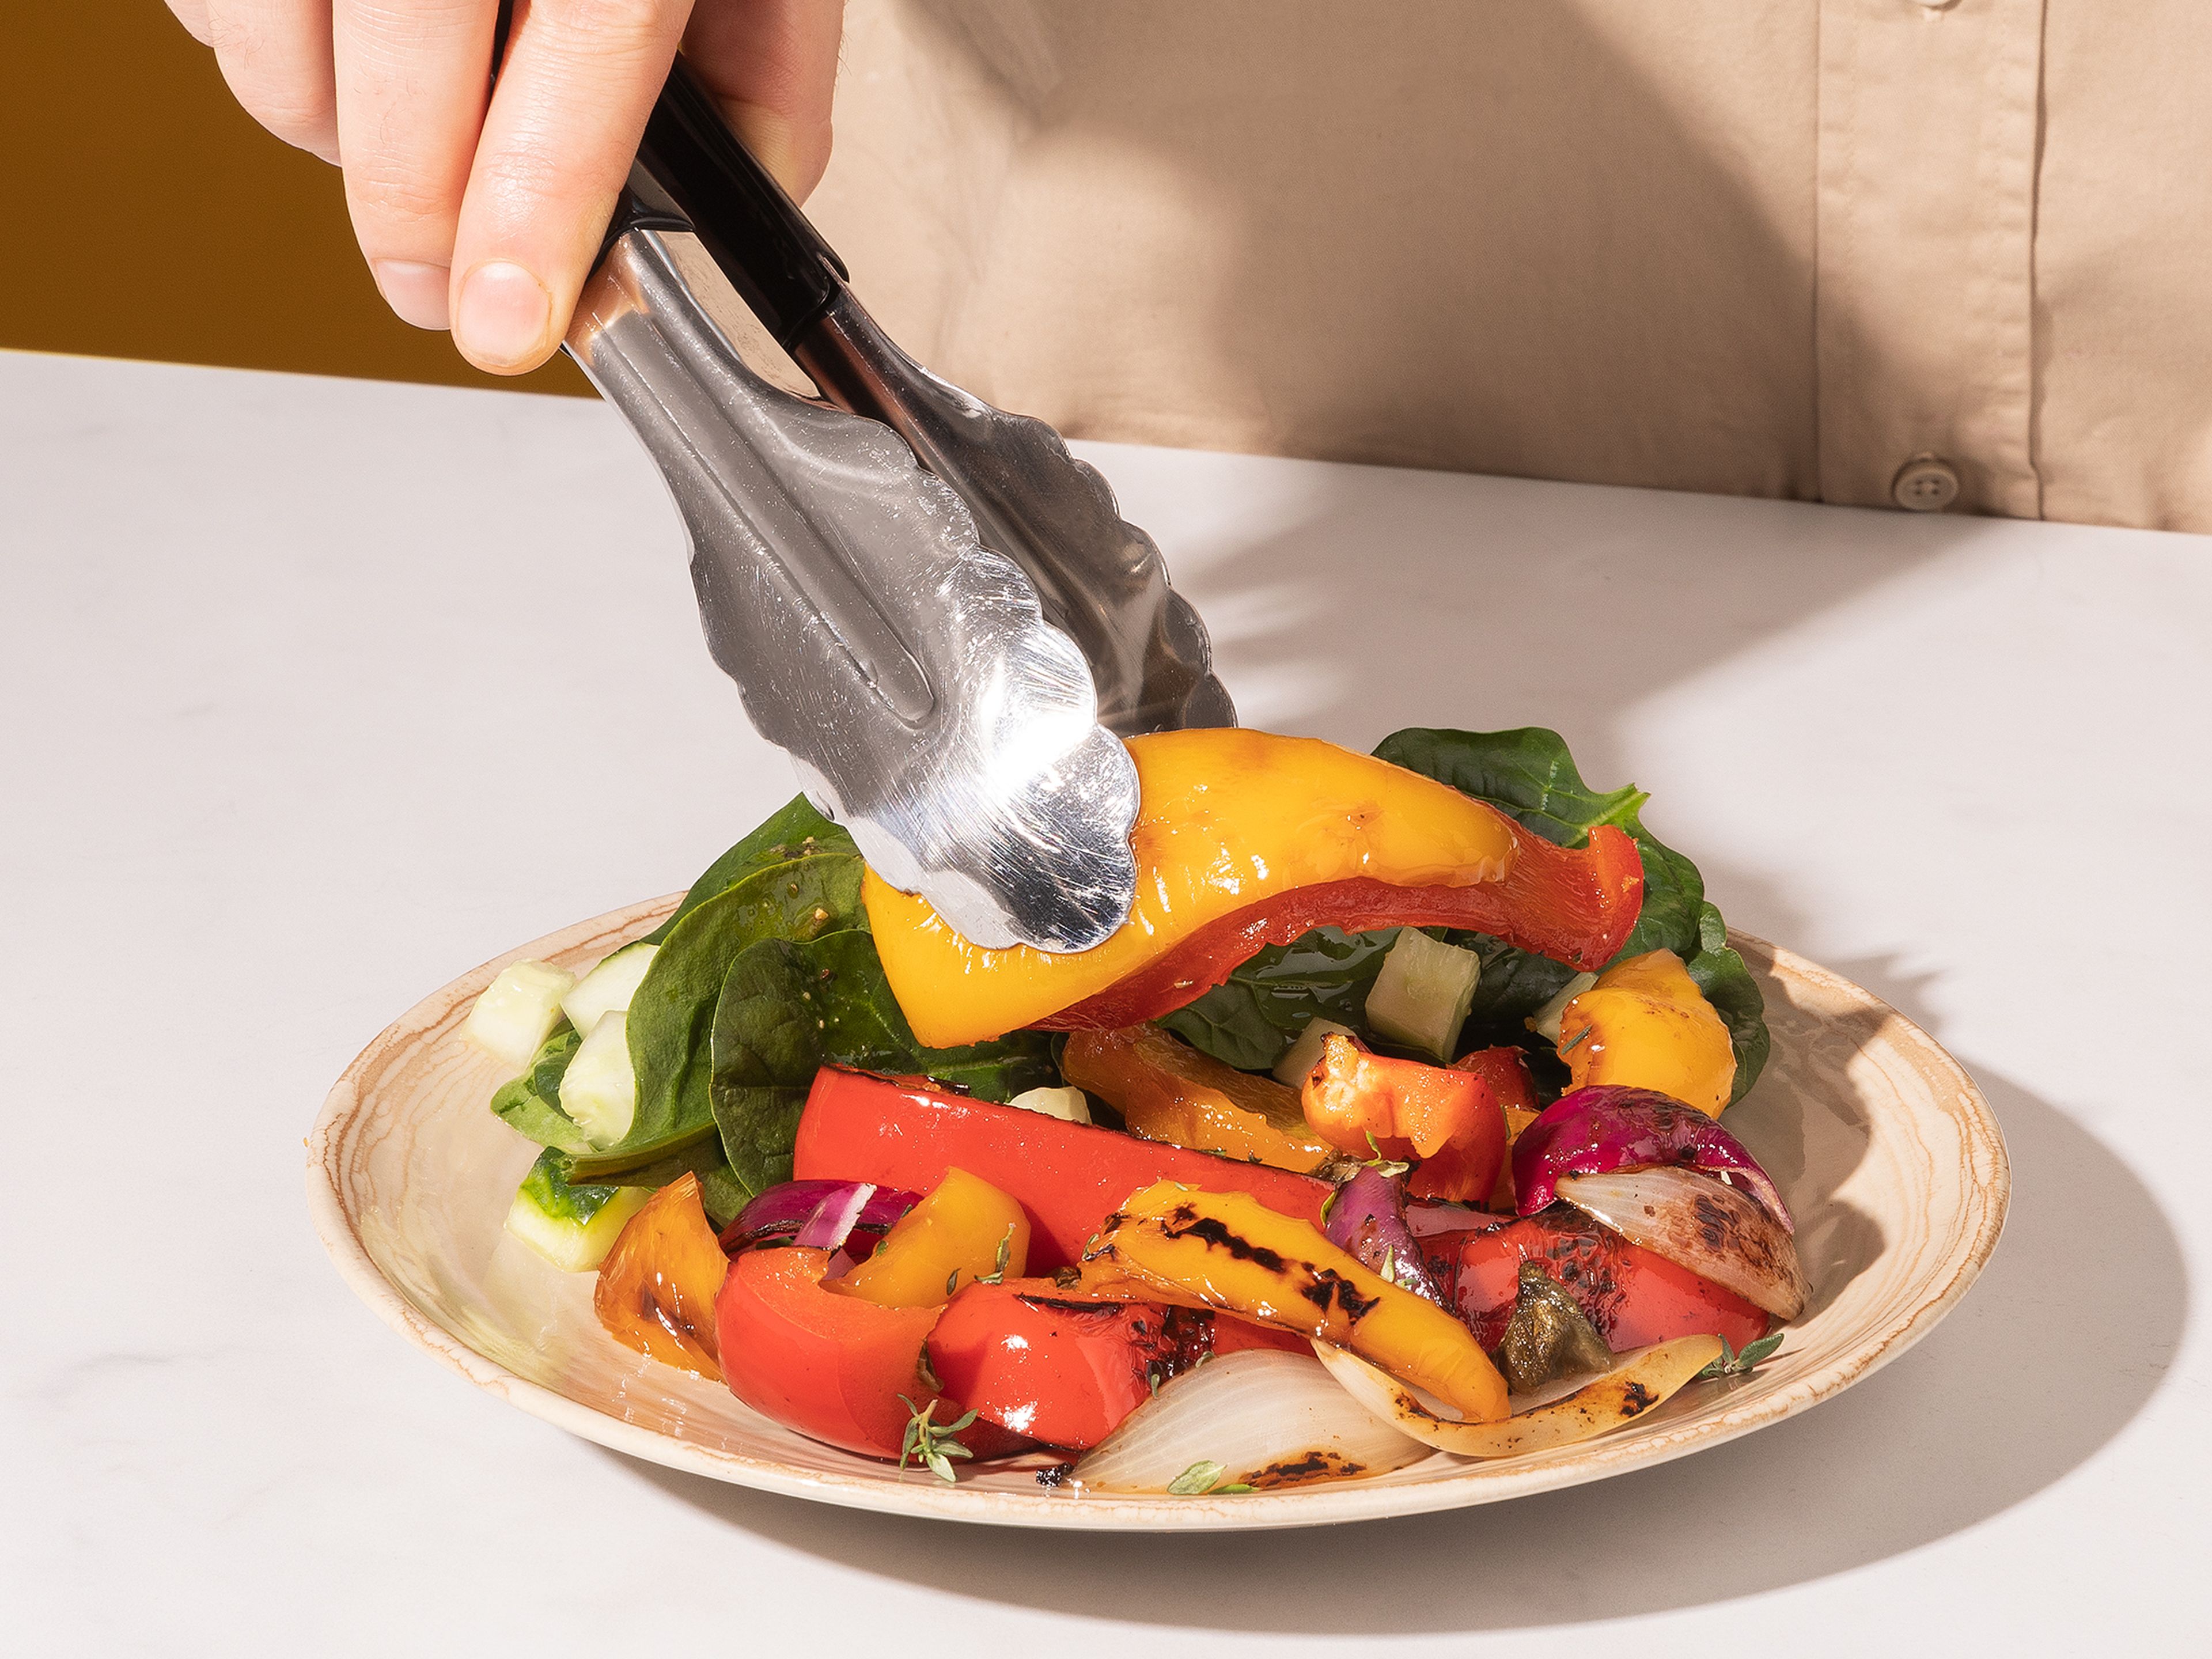 Gouda-Schnitzel mit dem Pfannengemüse anrichten und mit gehacktem Basilikum garnieren. Wahlweise mit einem grünen Salat oder Bratkartoffeln servieren. Guten Appetit!